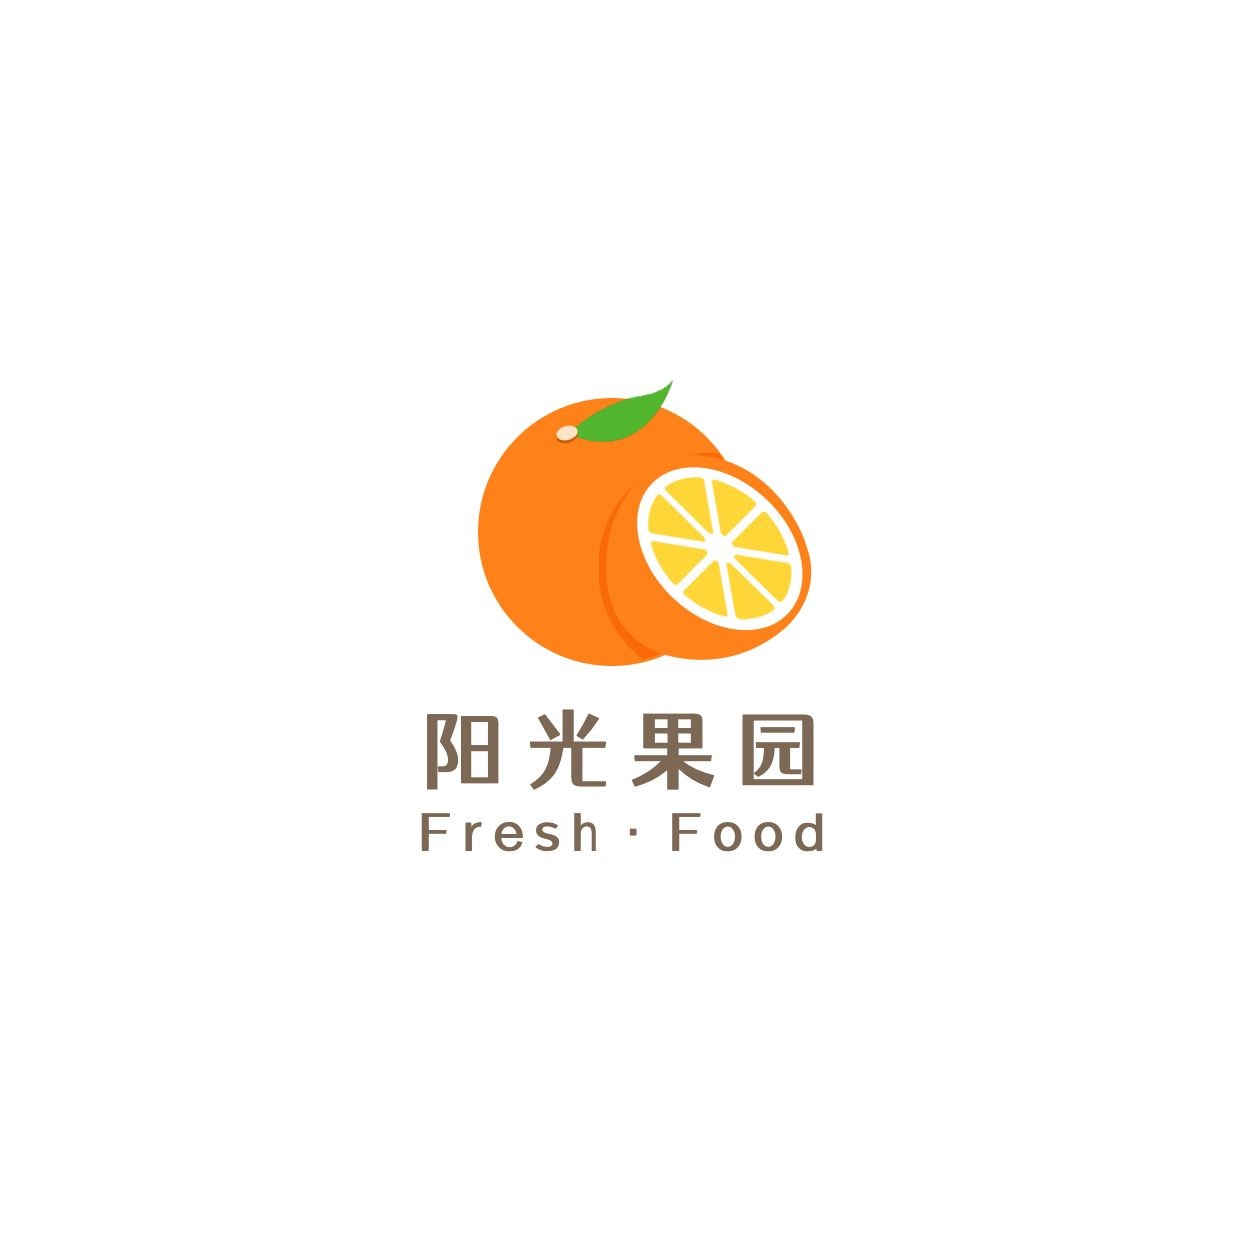 餐饮美食品牌宣传手绘logo